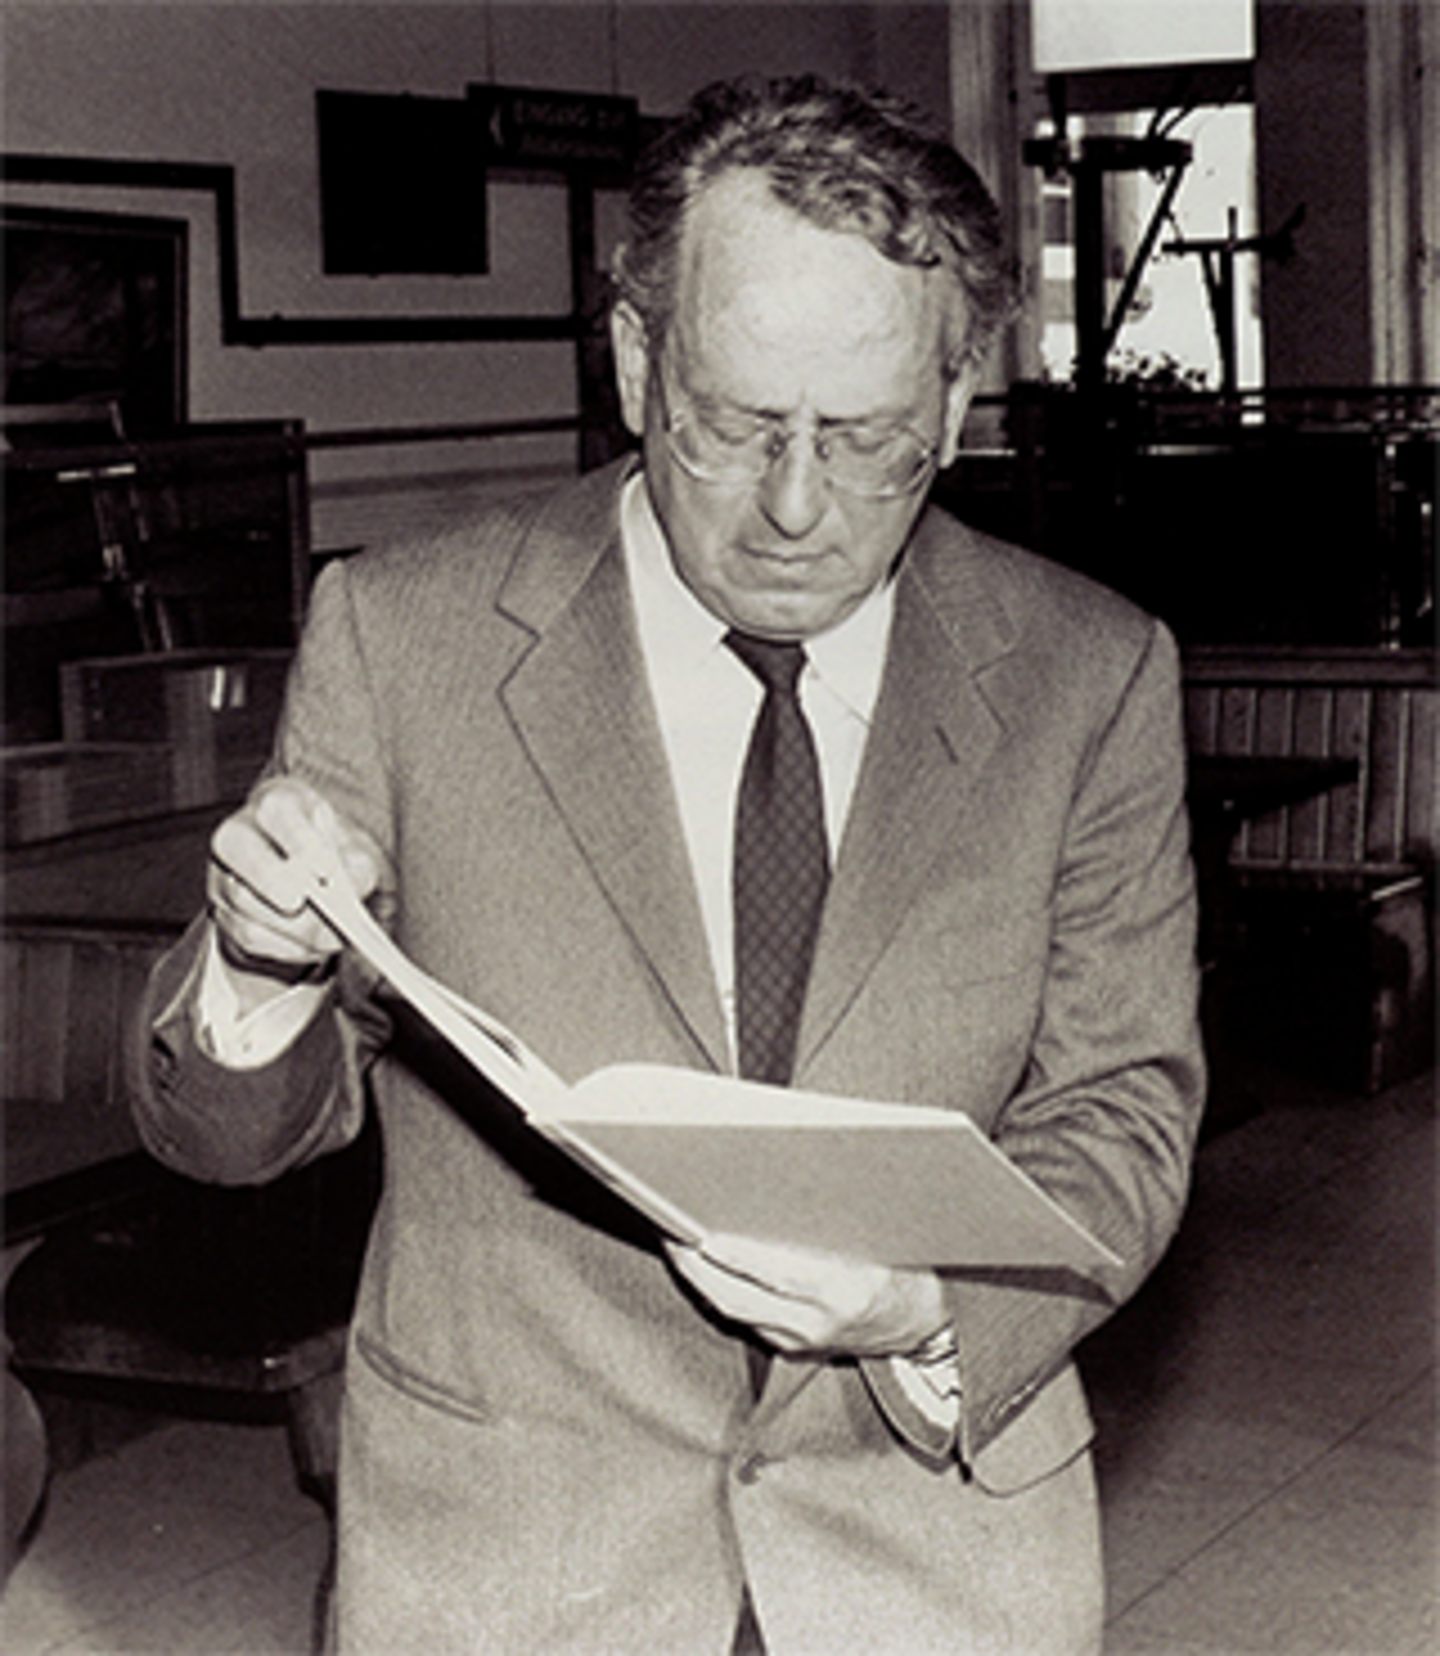 Ein Porträt von Georg Andreas Bachem im Jahr 1989. Er trägt einen Anzug und eine Brille, und hält ein offenes Buch in der Hand und richtet den Blick darauf.